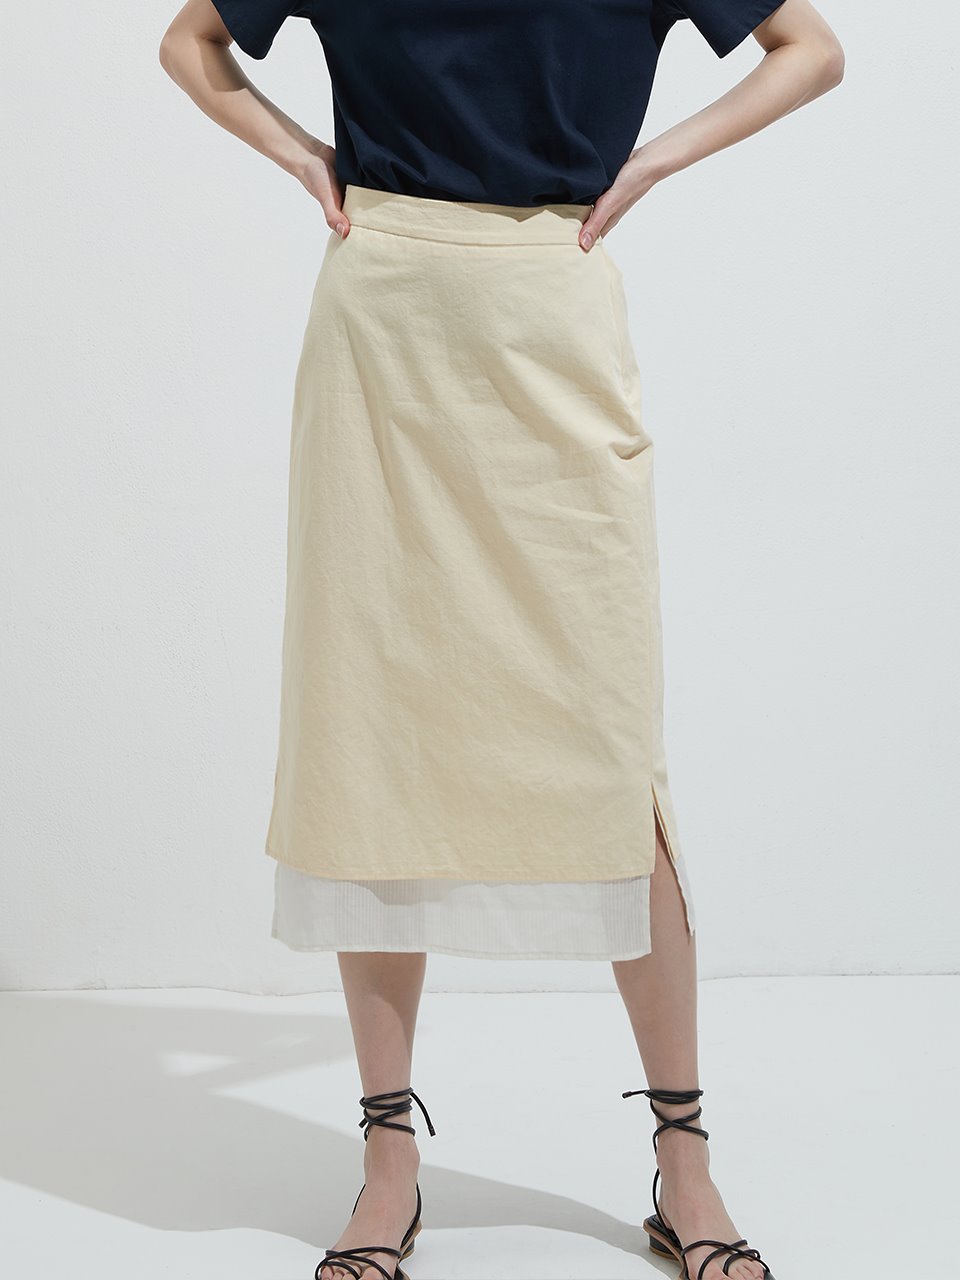 Twofold linen skirt - Light yellow